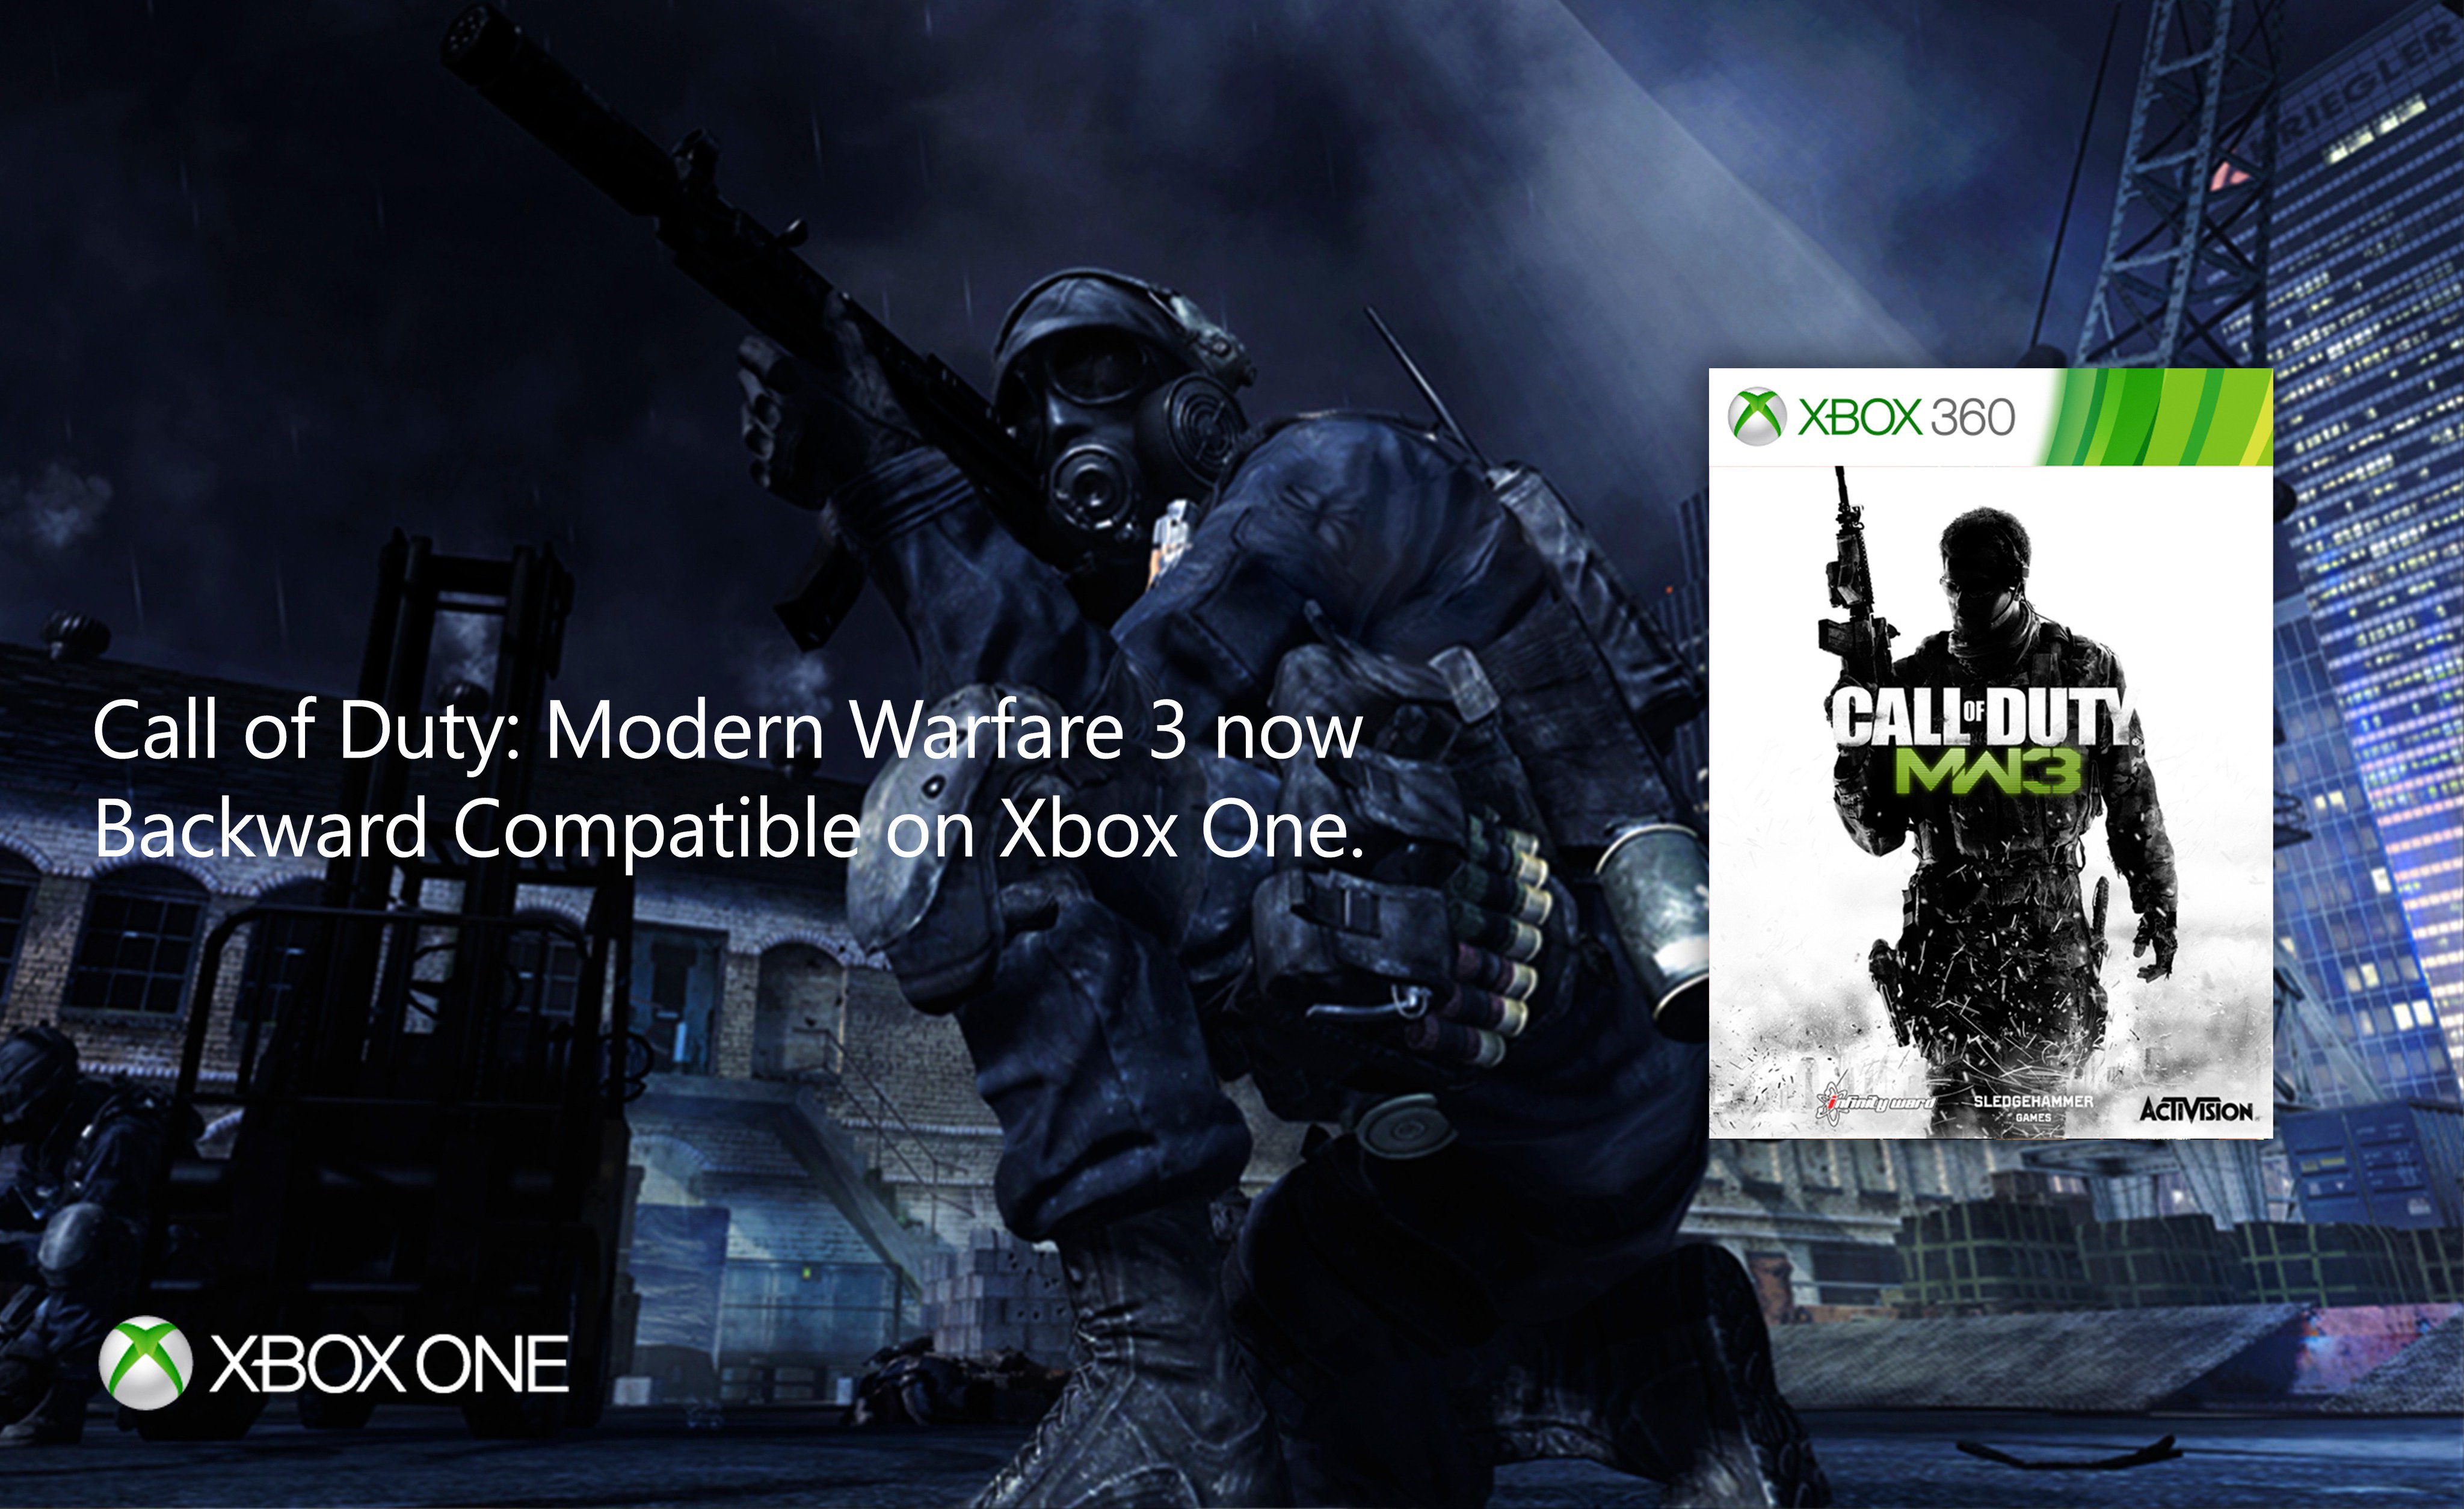 Raak verstrikt Klimatologische bergen Kamer Xbox UK on Twitter: "Fine. Call of Duty: Modern Warfare 3 is now playable  on Xbox One via Backward Compatibility 🎮 https://t.co/gyBHCAXH5u" / Twitter